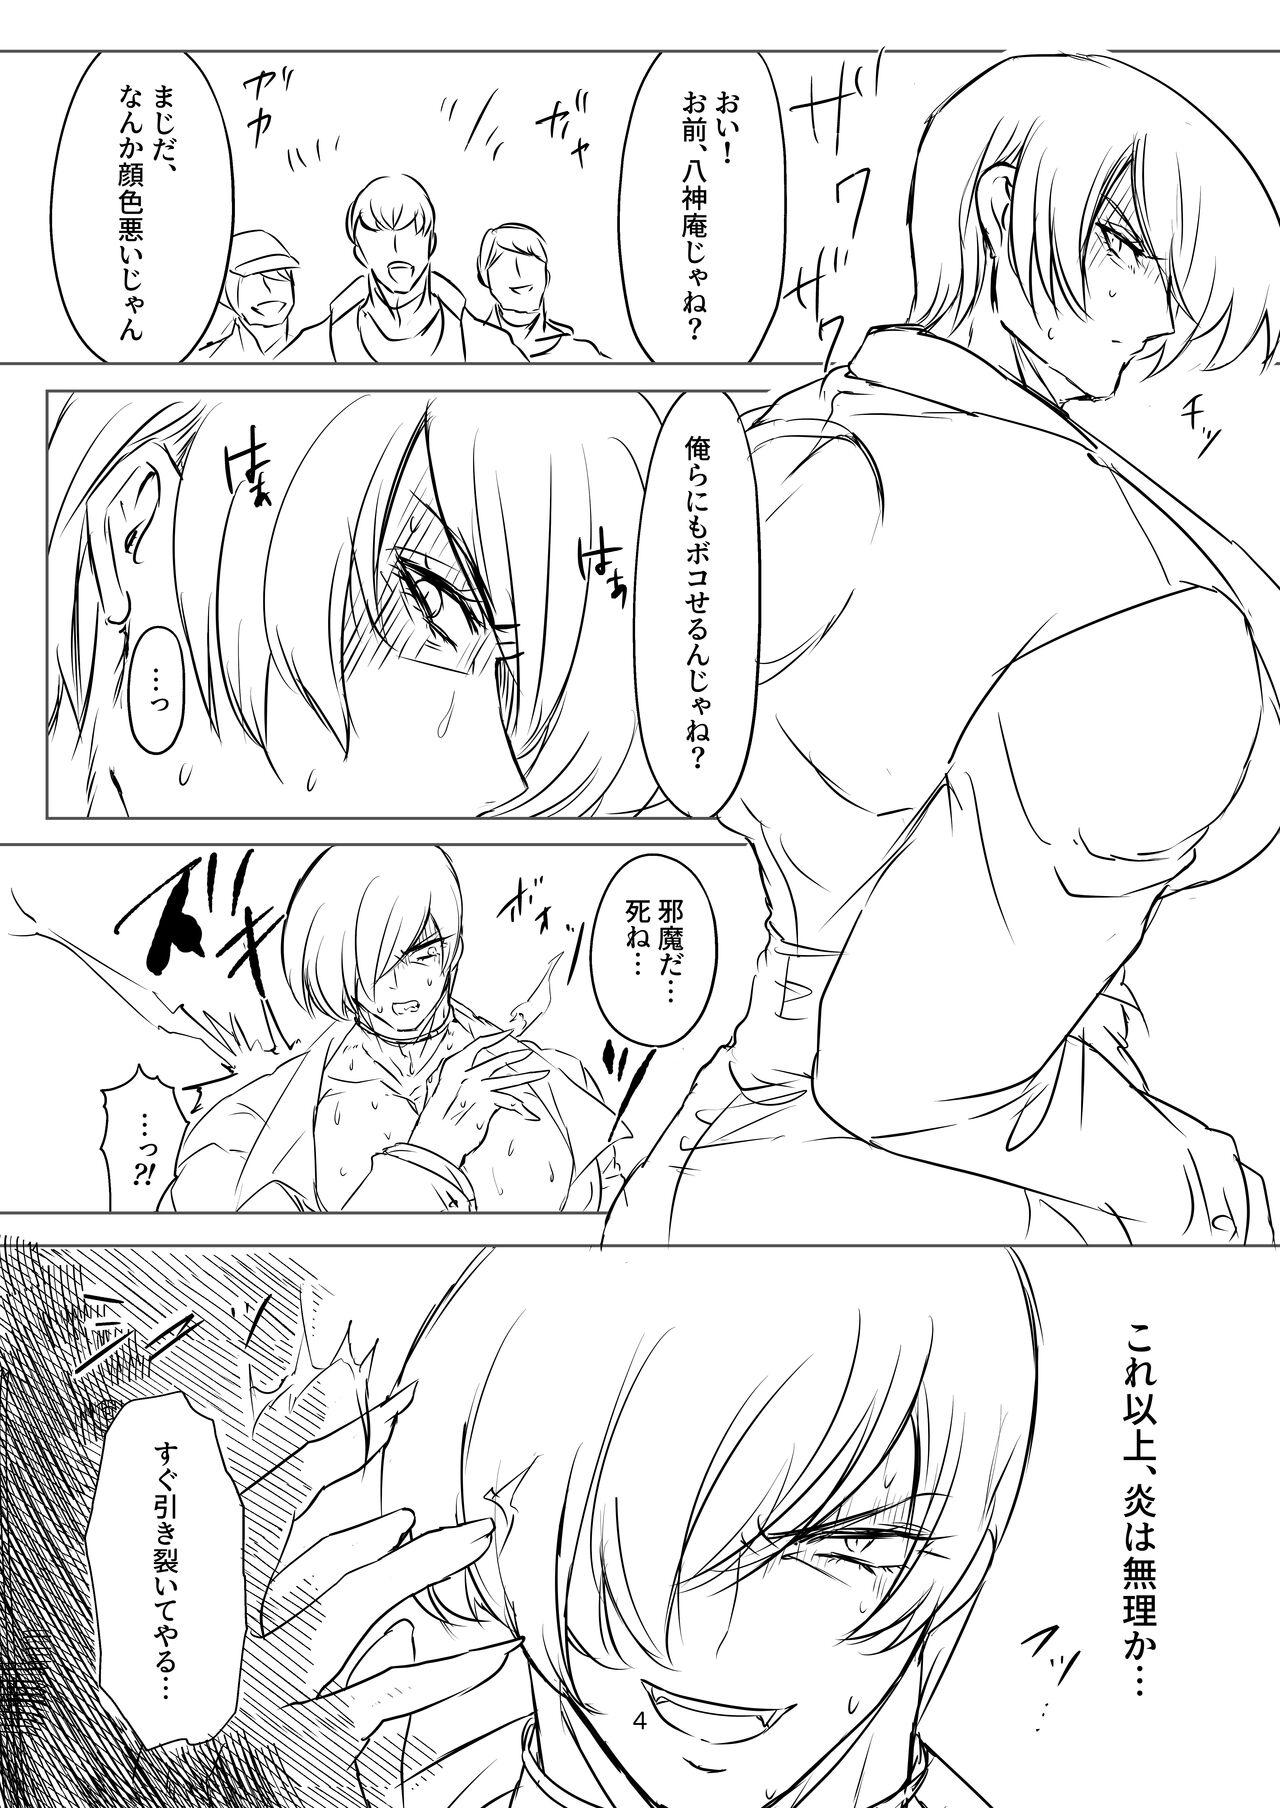 R18 Manga EAT ME! 3